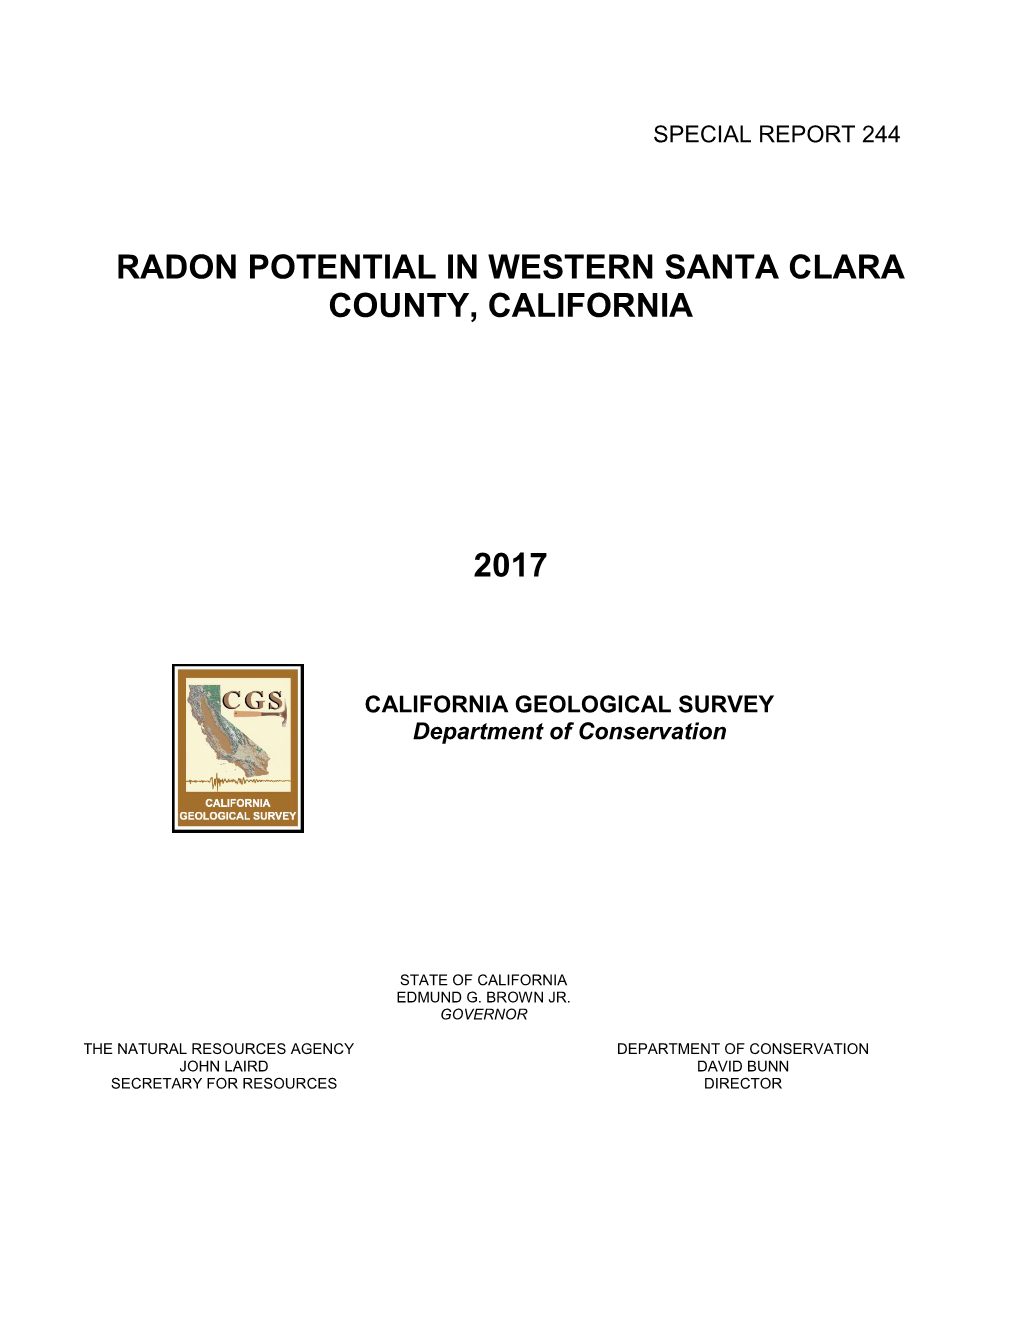 Radon Potential in Western Santa Clara County, California